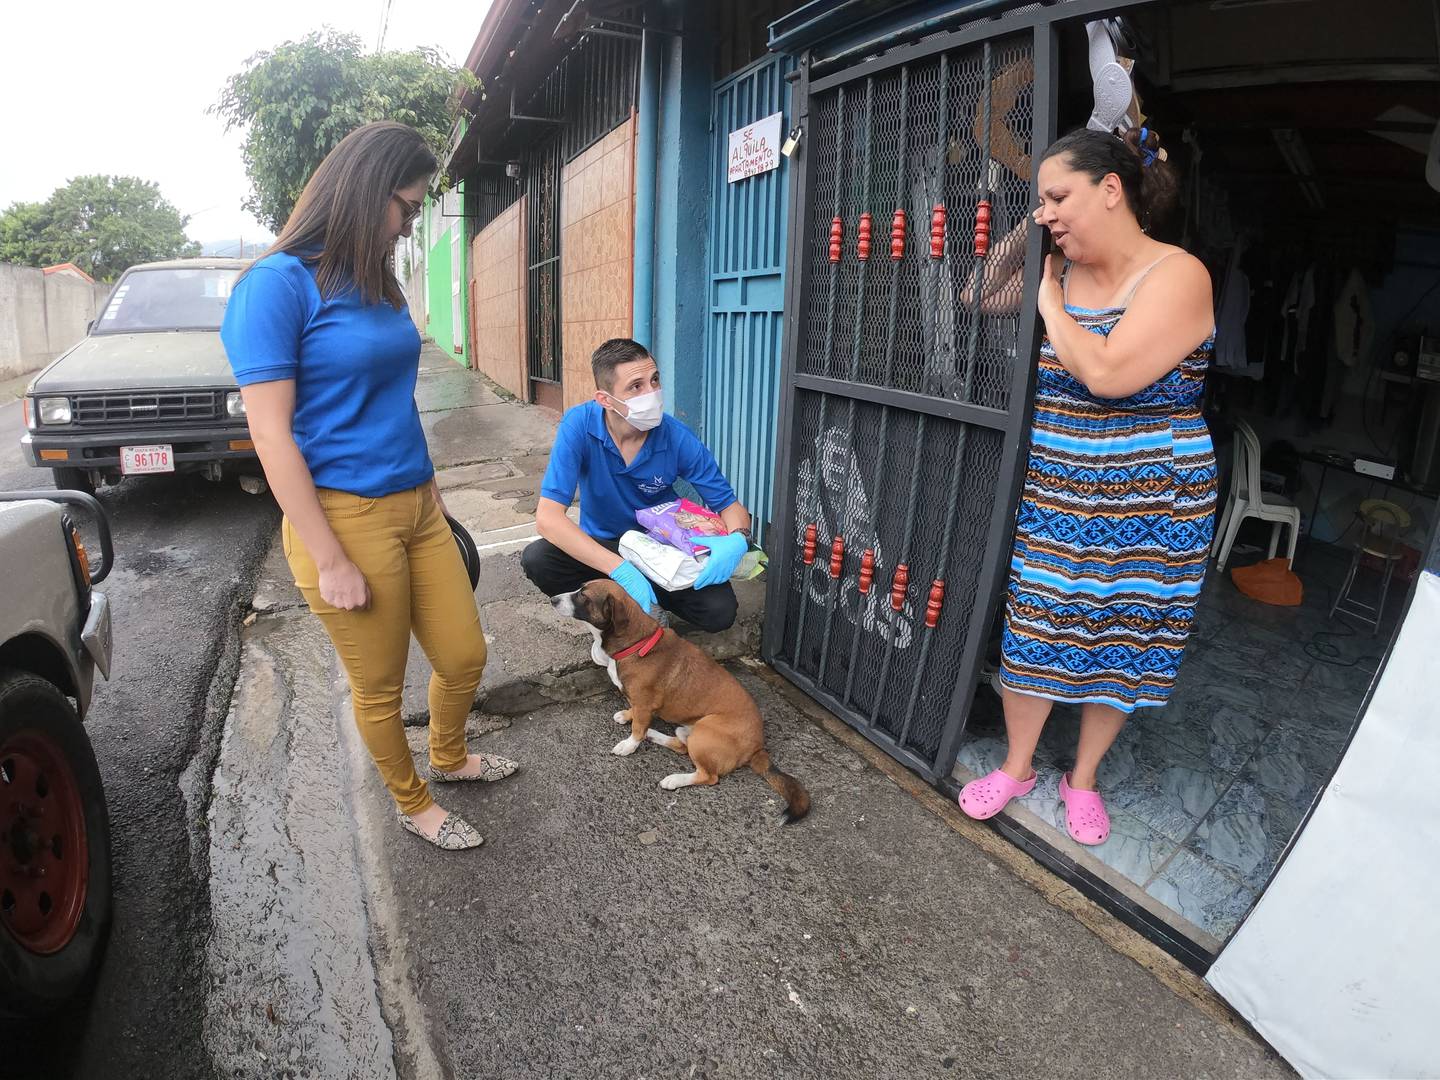 Memorial Pets, por medio de la campaña “Una Pata Amiga”, realizó una donación de 130 kg de alimento para mascotas a familias afectadas por esta crisis